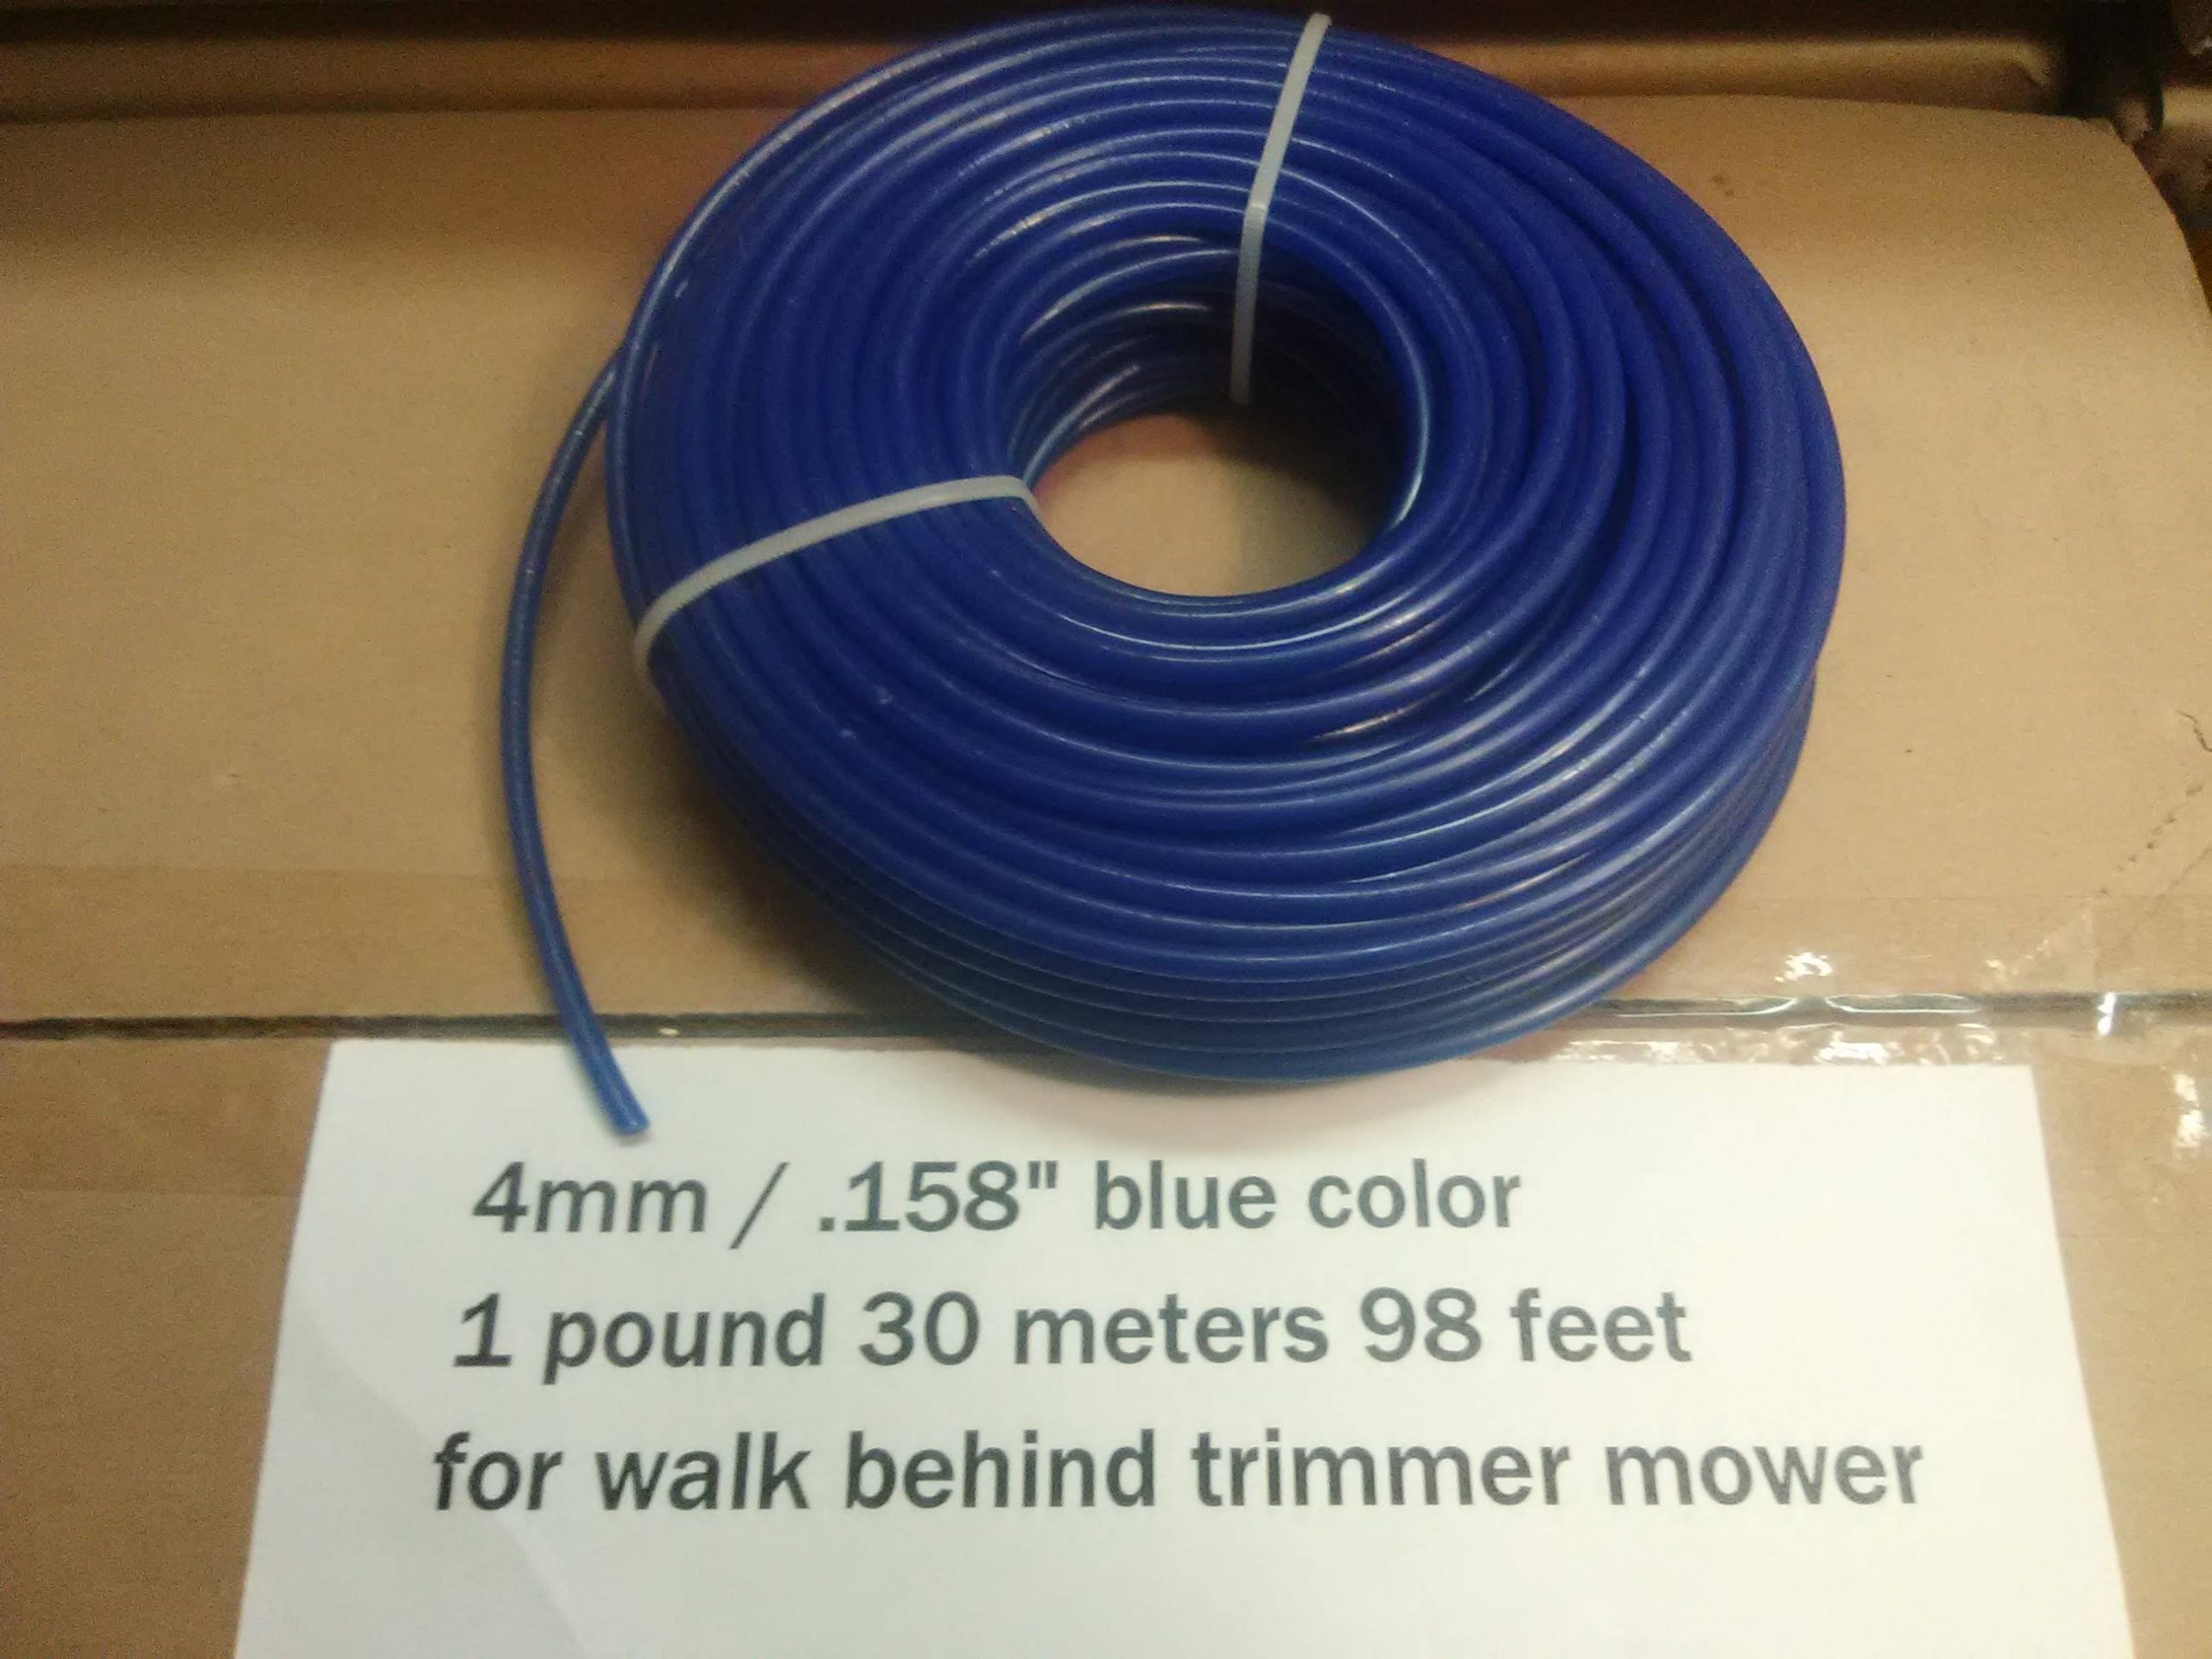 1.65 mm trimmer line